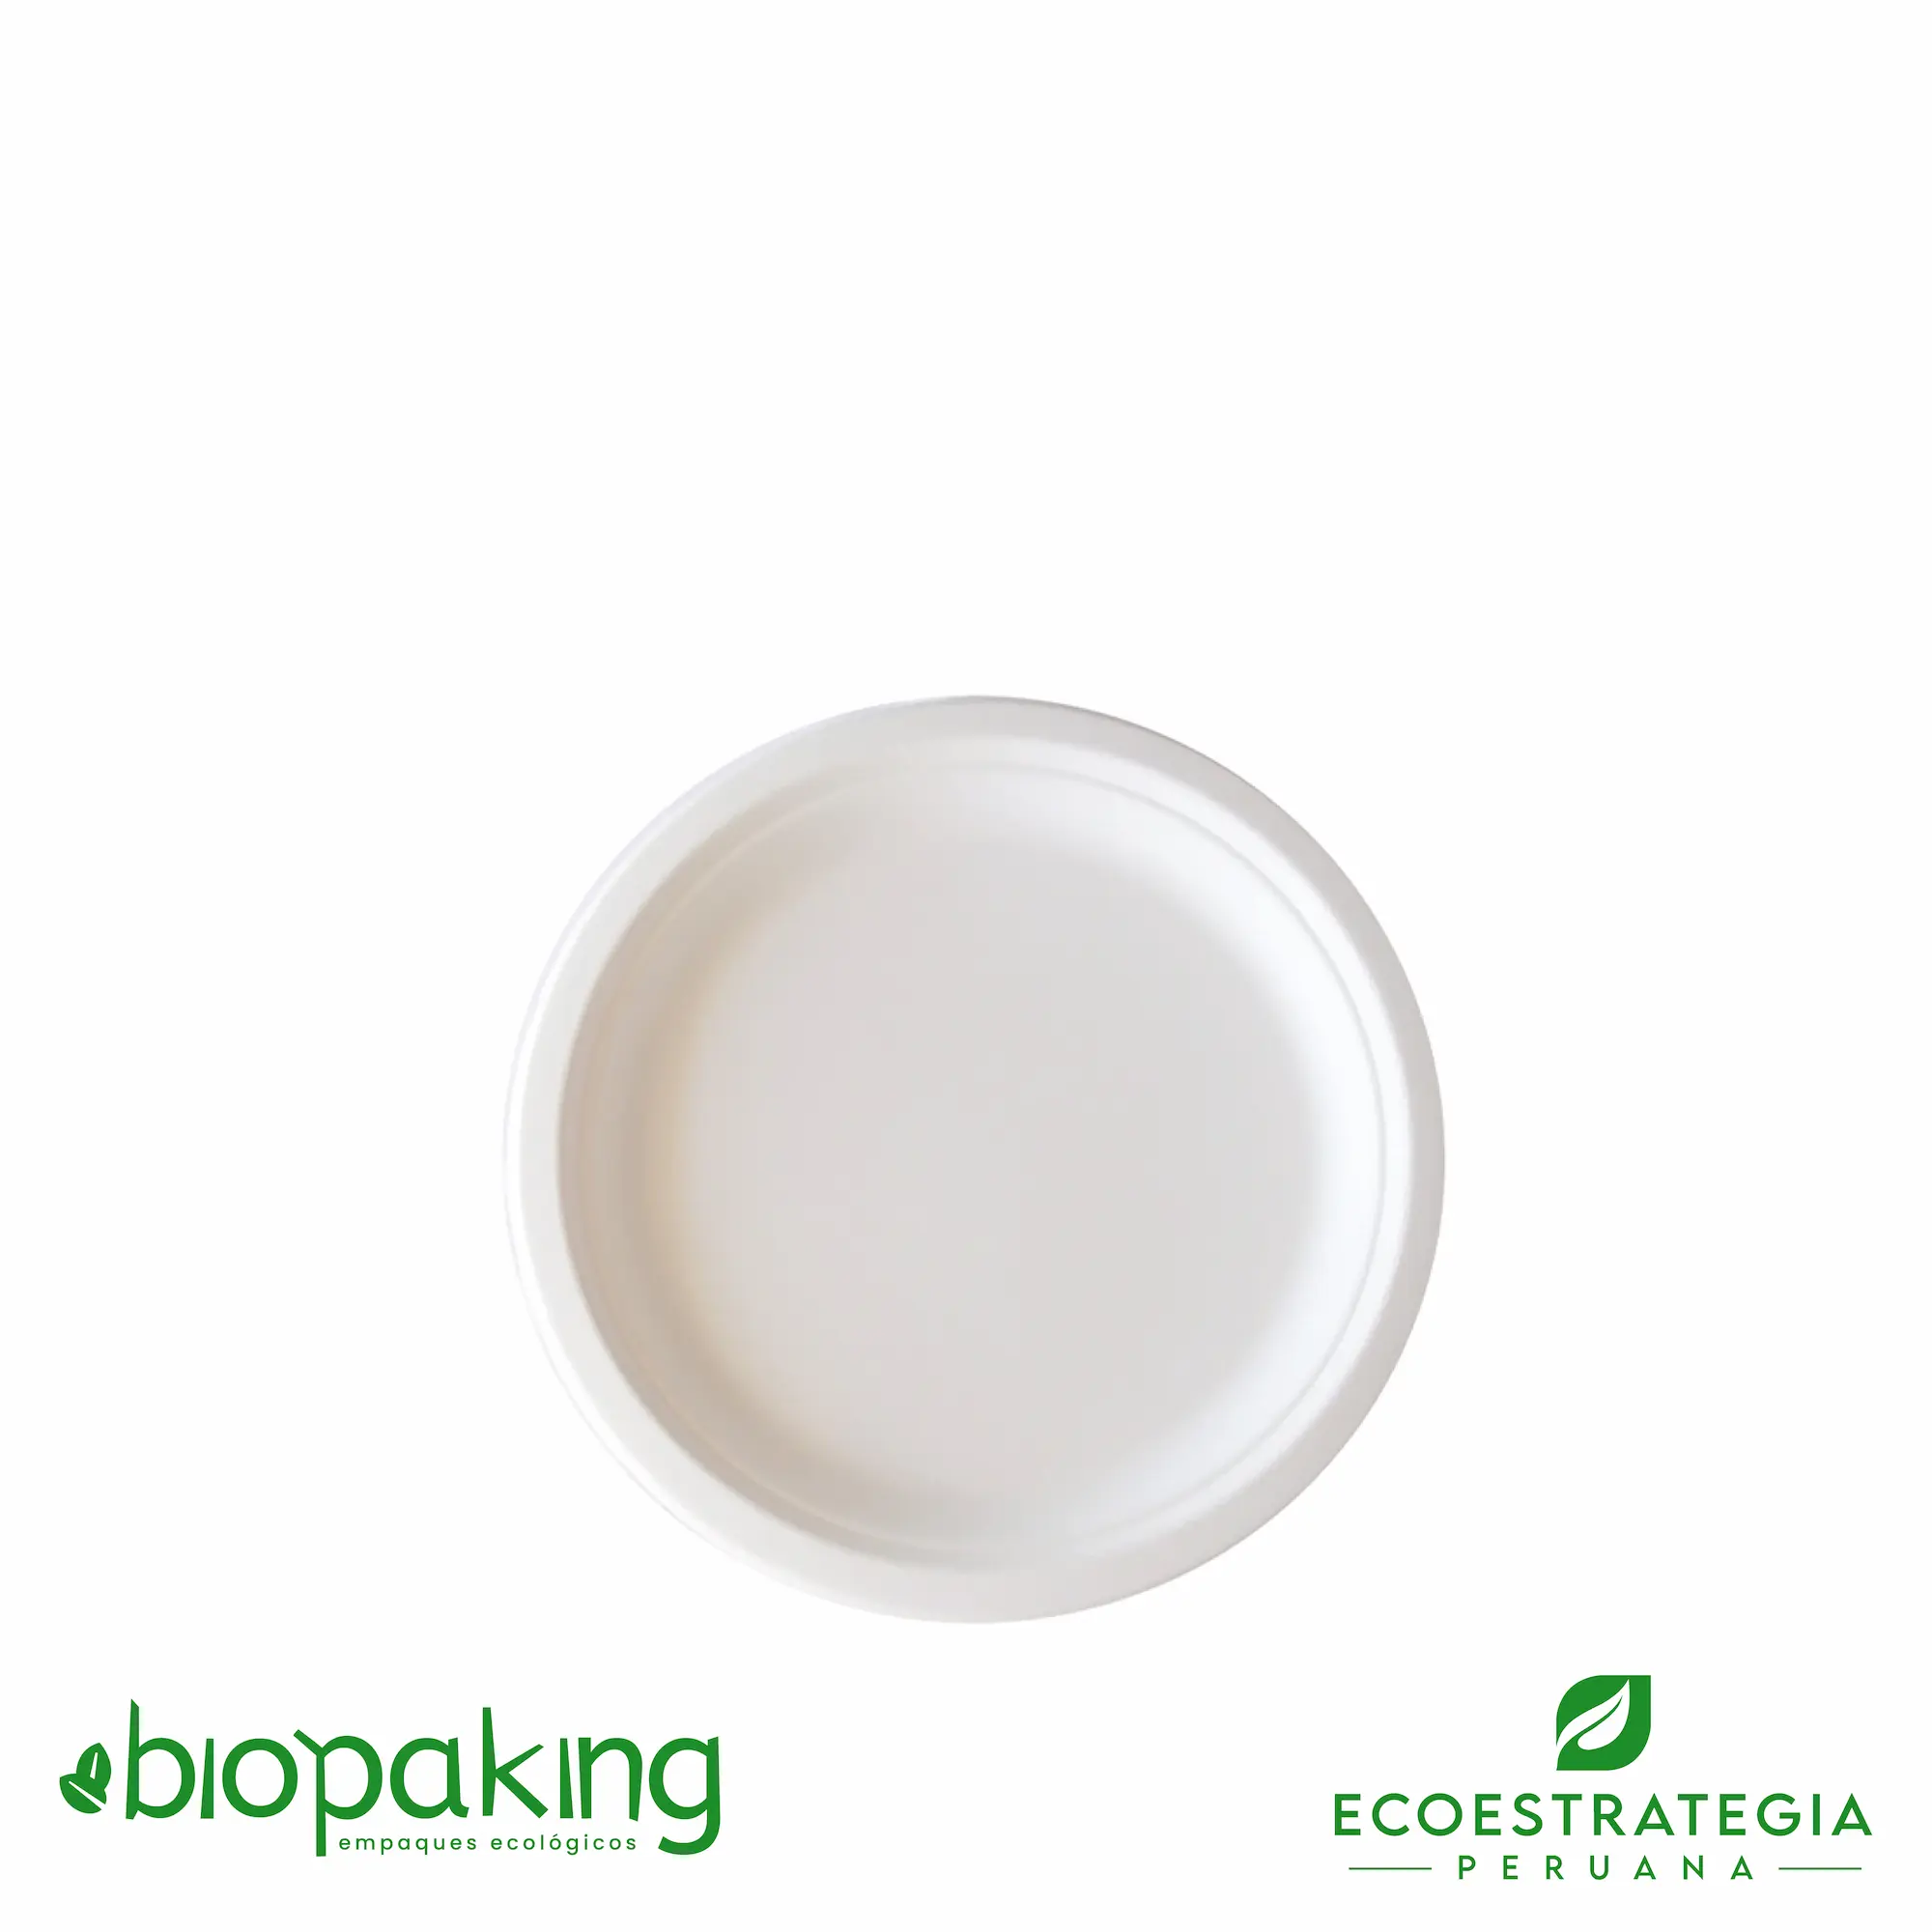 El plato biodegadable de 18cm esta hecho del bagazo de fibra de caña y su código es EP-18. Este plato es conocido también como Plato biodegradable número 18, plato biodegradable fibra, plato #18 biodegradable, plato eco 18 fibra de caña, plato biodegradable redondo 7”, plato degustación biodegradable, plato de fondo 18 cm, platos biodegradables 18, plato redondo chico 6”, plato 18 biodegradable, plato nº 18 bagazo de caña, plato 18 fibra, plato 18 bioform fibra-ks bagazo caña, plato postre biodegradable, plato biodegradable precio, platos biodegradable caseros, platos biodegradables al por mayor, platos biodegradables makro, platos biodegradables plaza vea, importadores de platos biodegradables 18, distribuidores de platos biodegradables 18, mayoristas de platos biodegradables 18